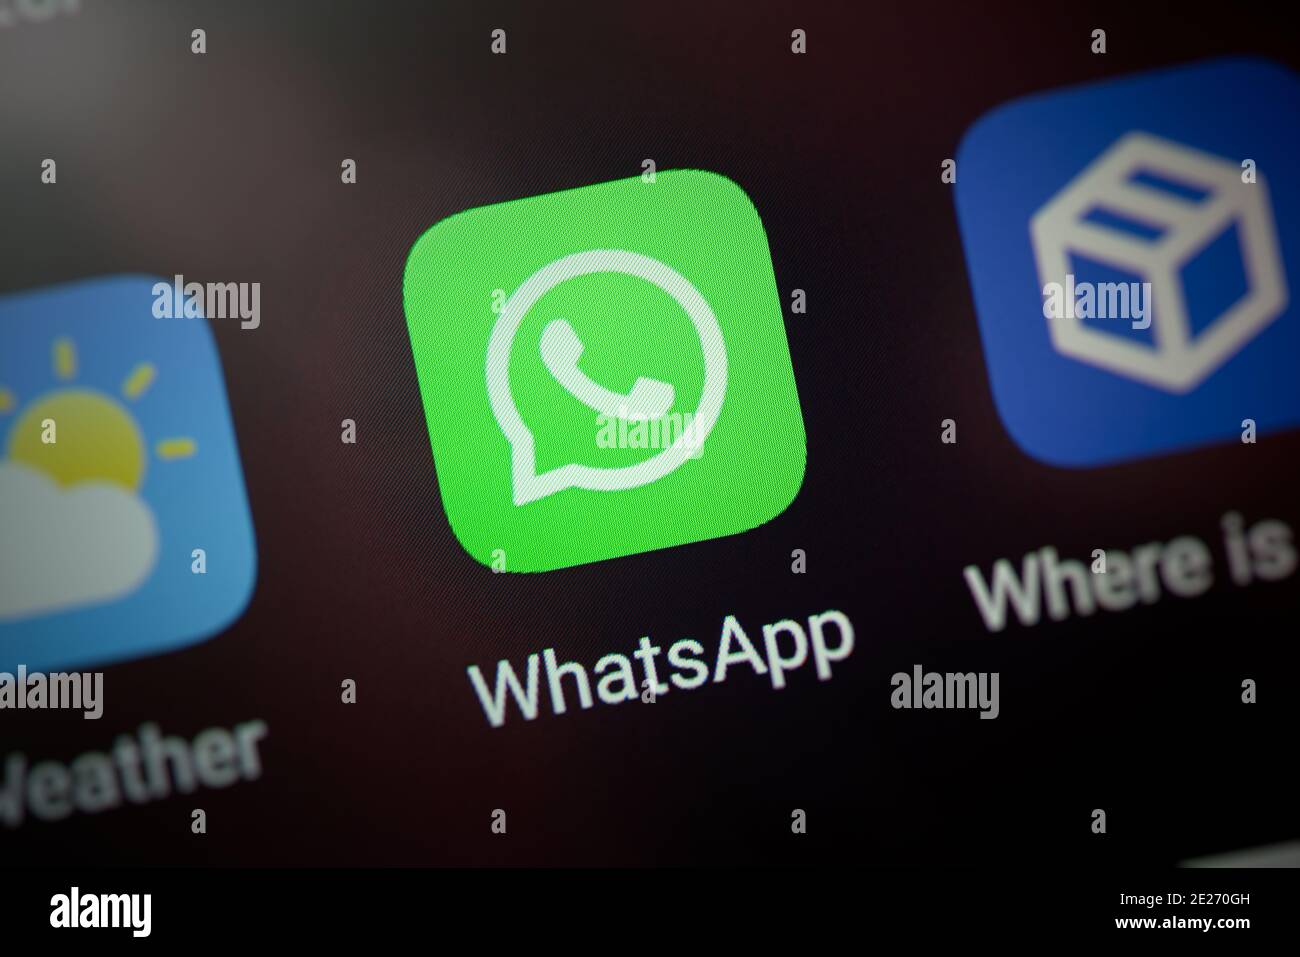 Wroclaw, Pologne - 30 NOVEMBRE 2020 : icône WhatsApp sur le système Android. WhatsApp est un service de messagerie instantanée développé par Facebook Banque D'Images